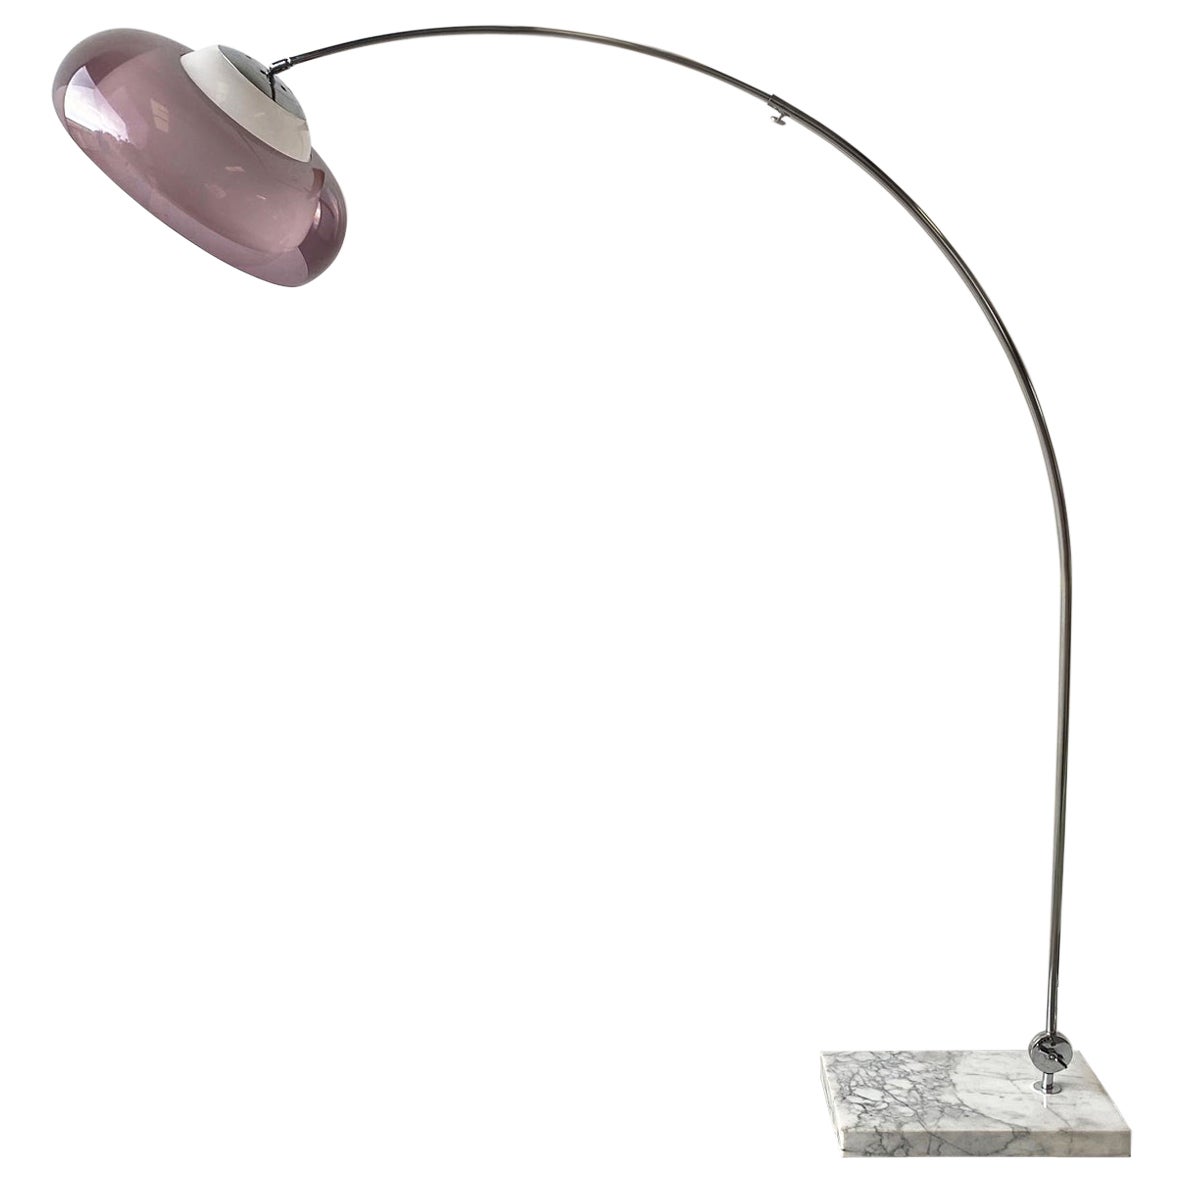 1960's Mid century modern Italian floor arc lamp